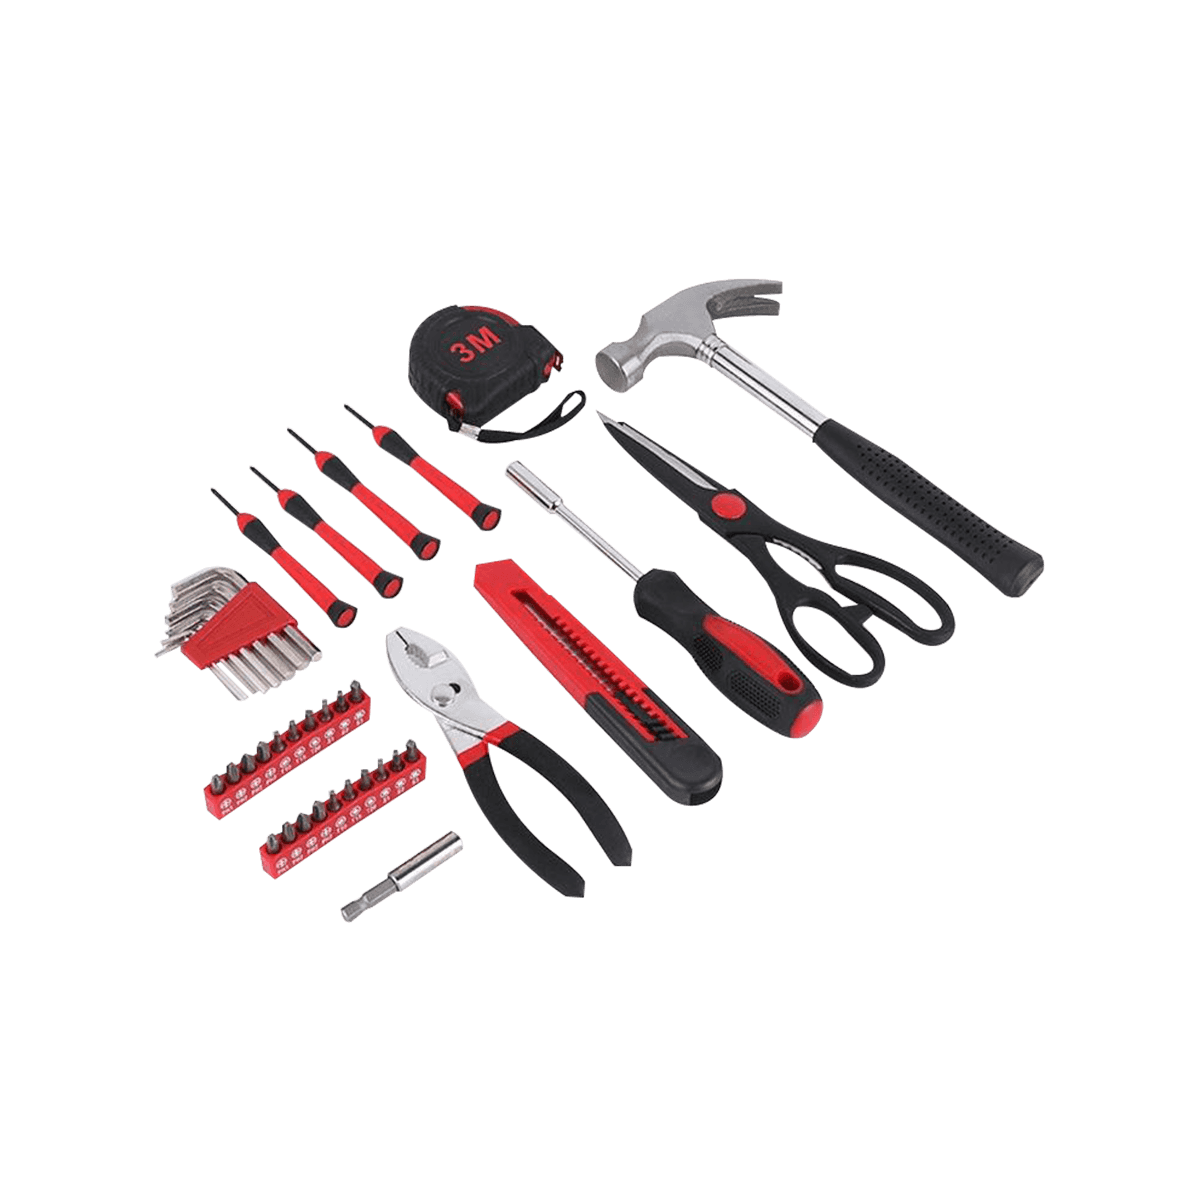 Ensemble d'outils de 39 pièces Kit d'outils à main ménager avec stockage de boîte à outils portable